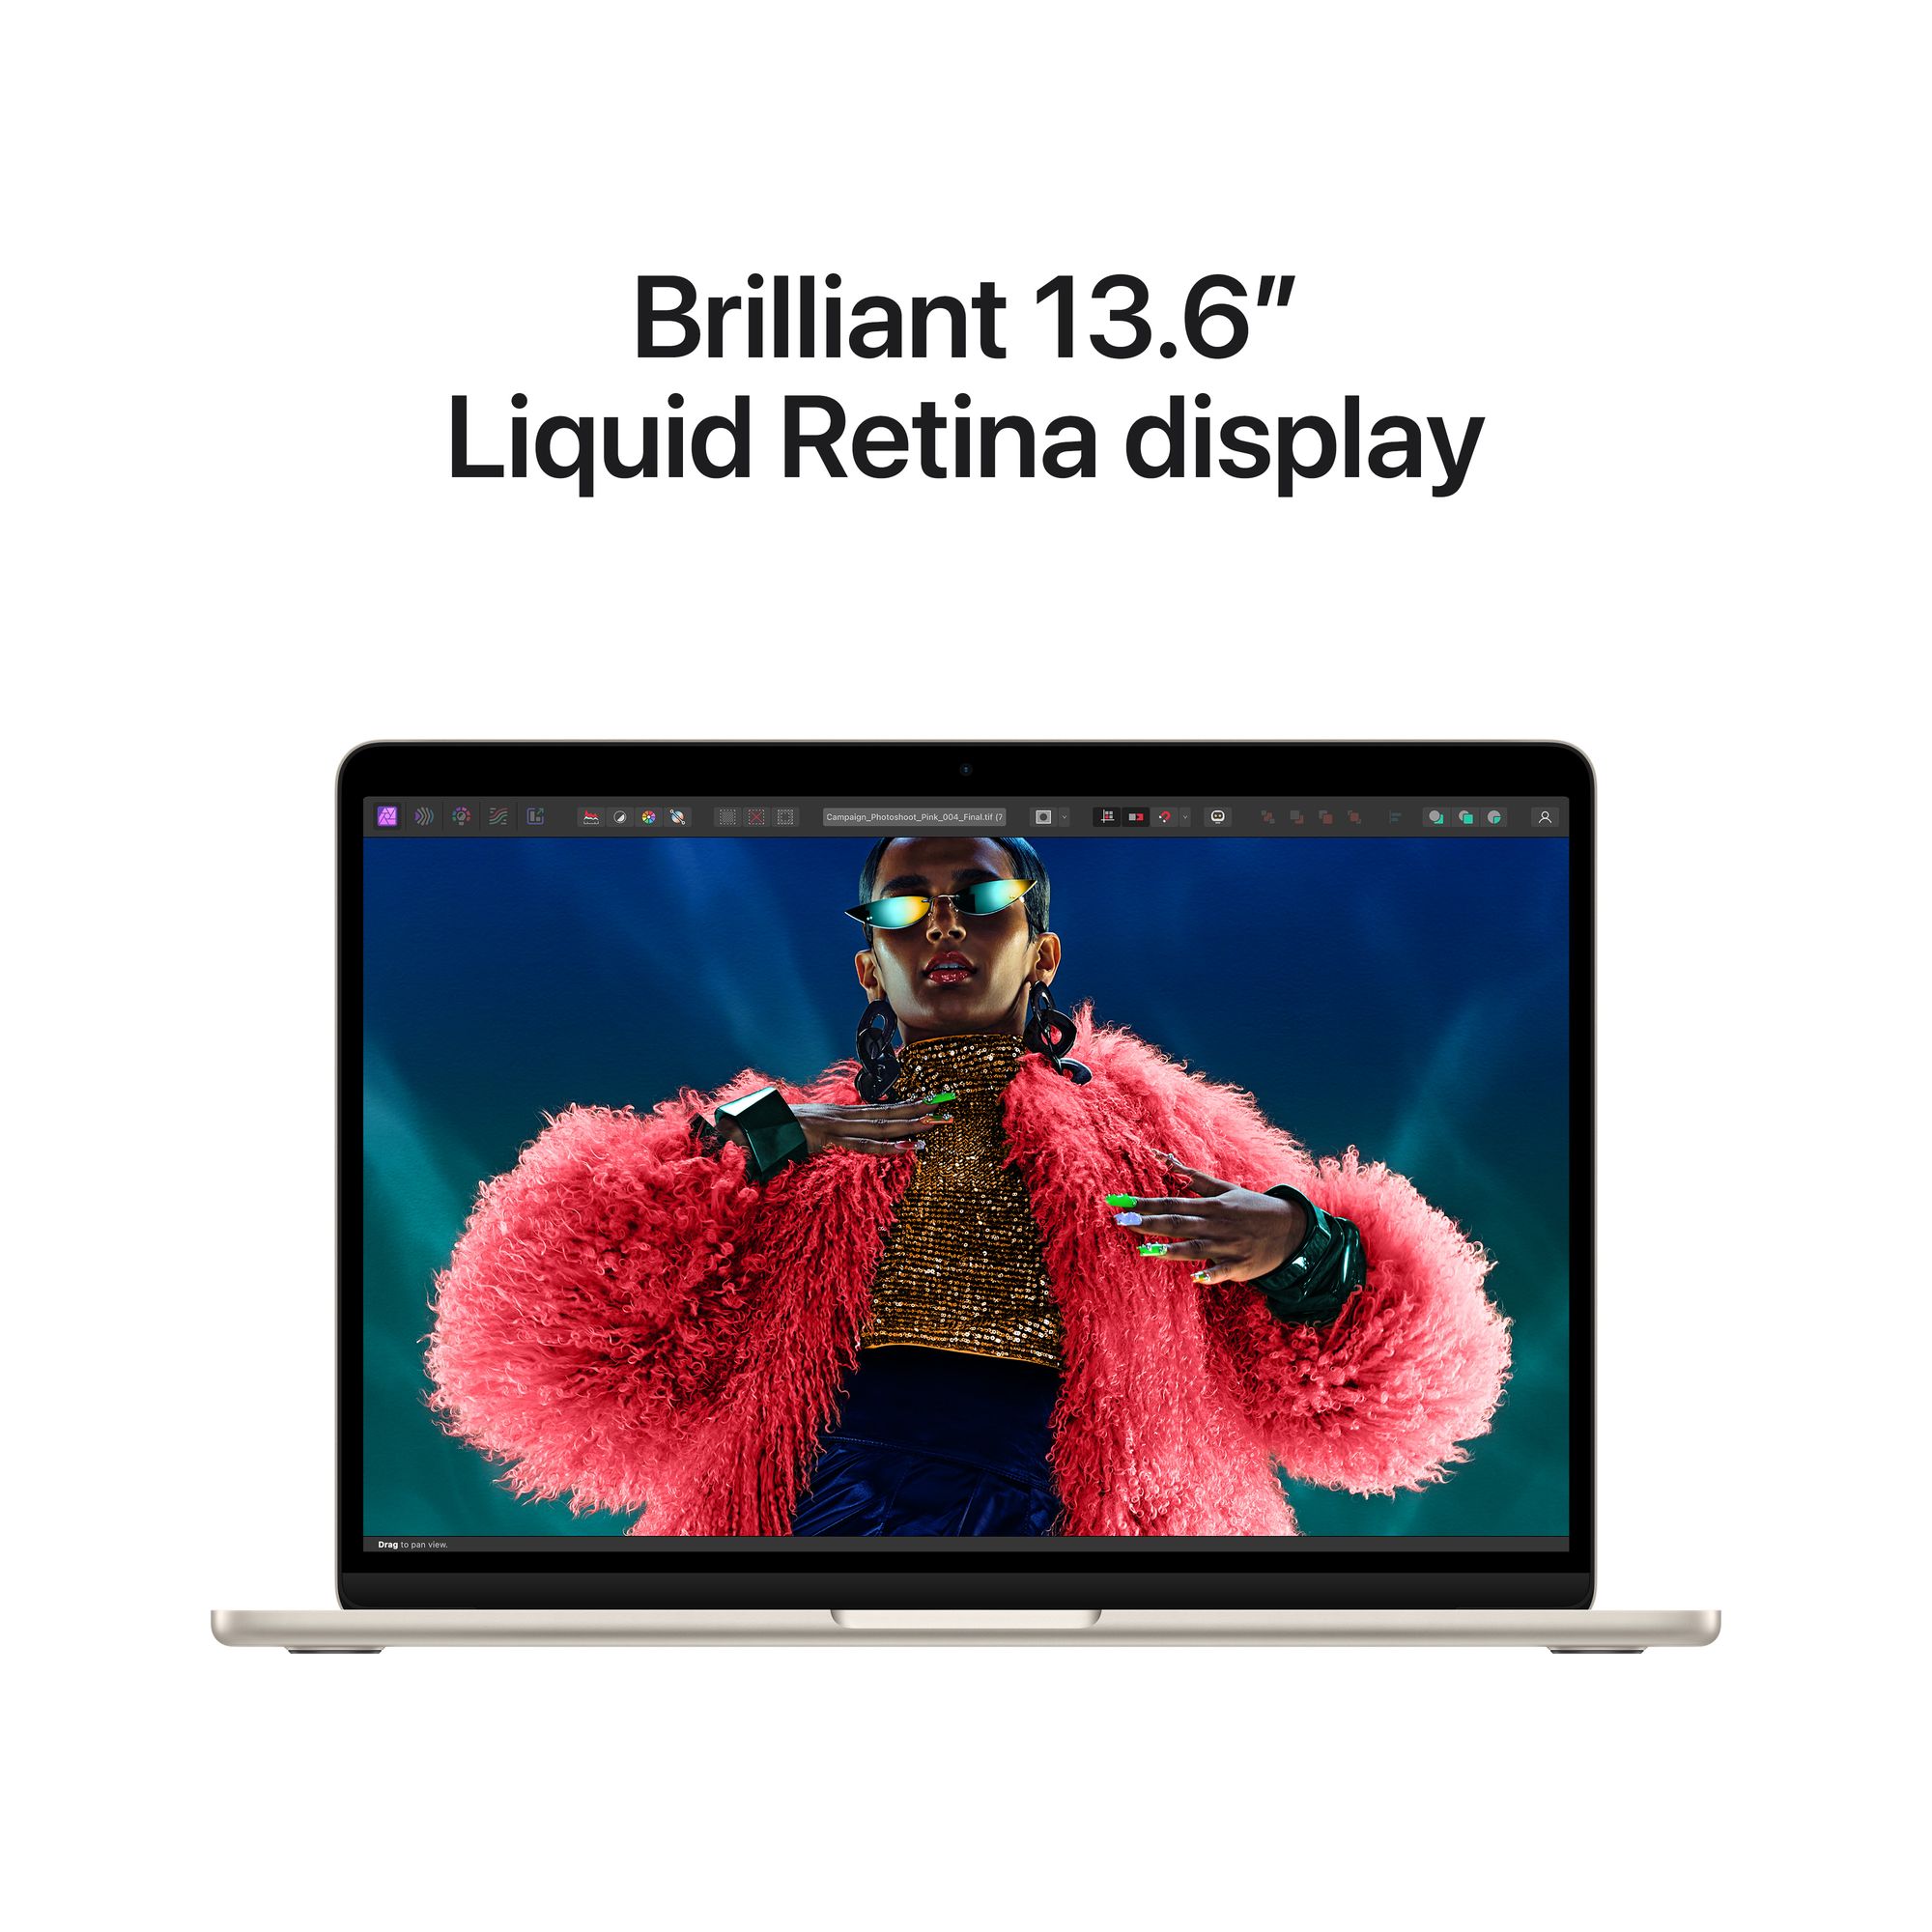 13-inch MacBook Air: Apple M3 chip 8-core CPU, 8-core GPU, 8GB, 256GB SSD - csillagfény